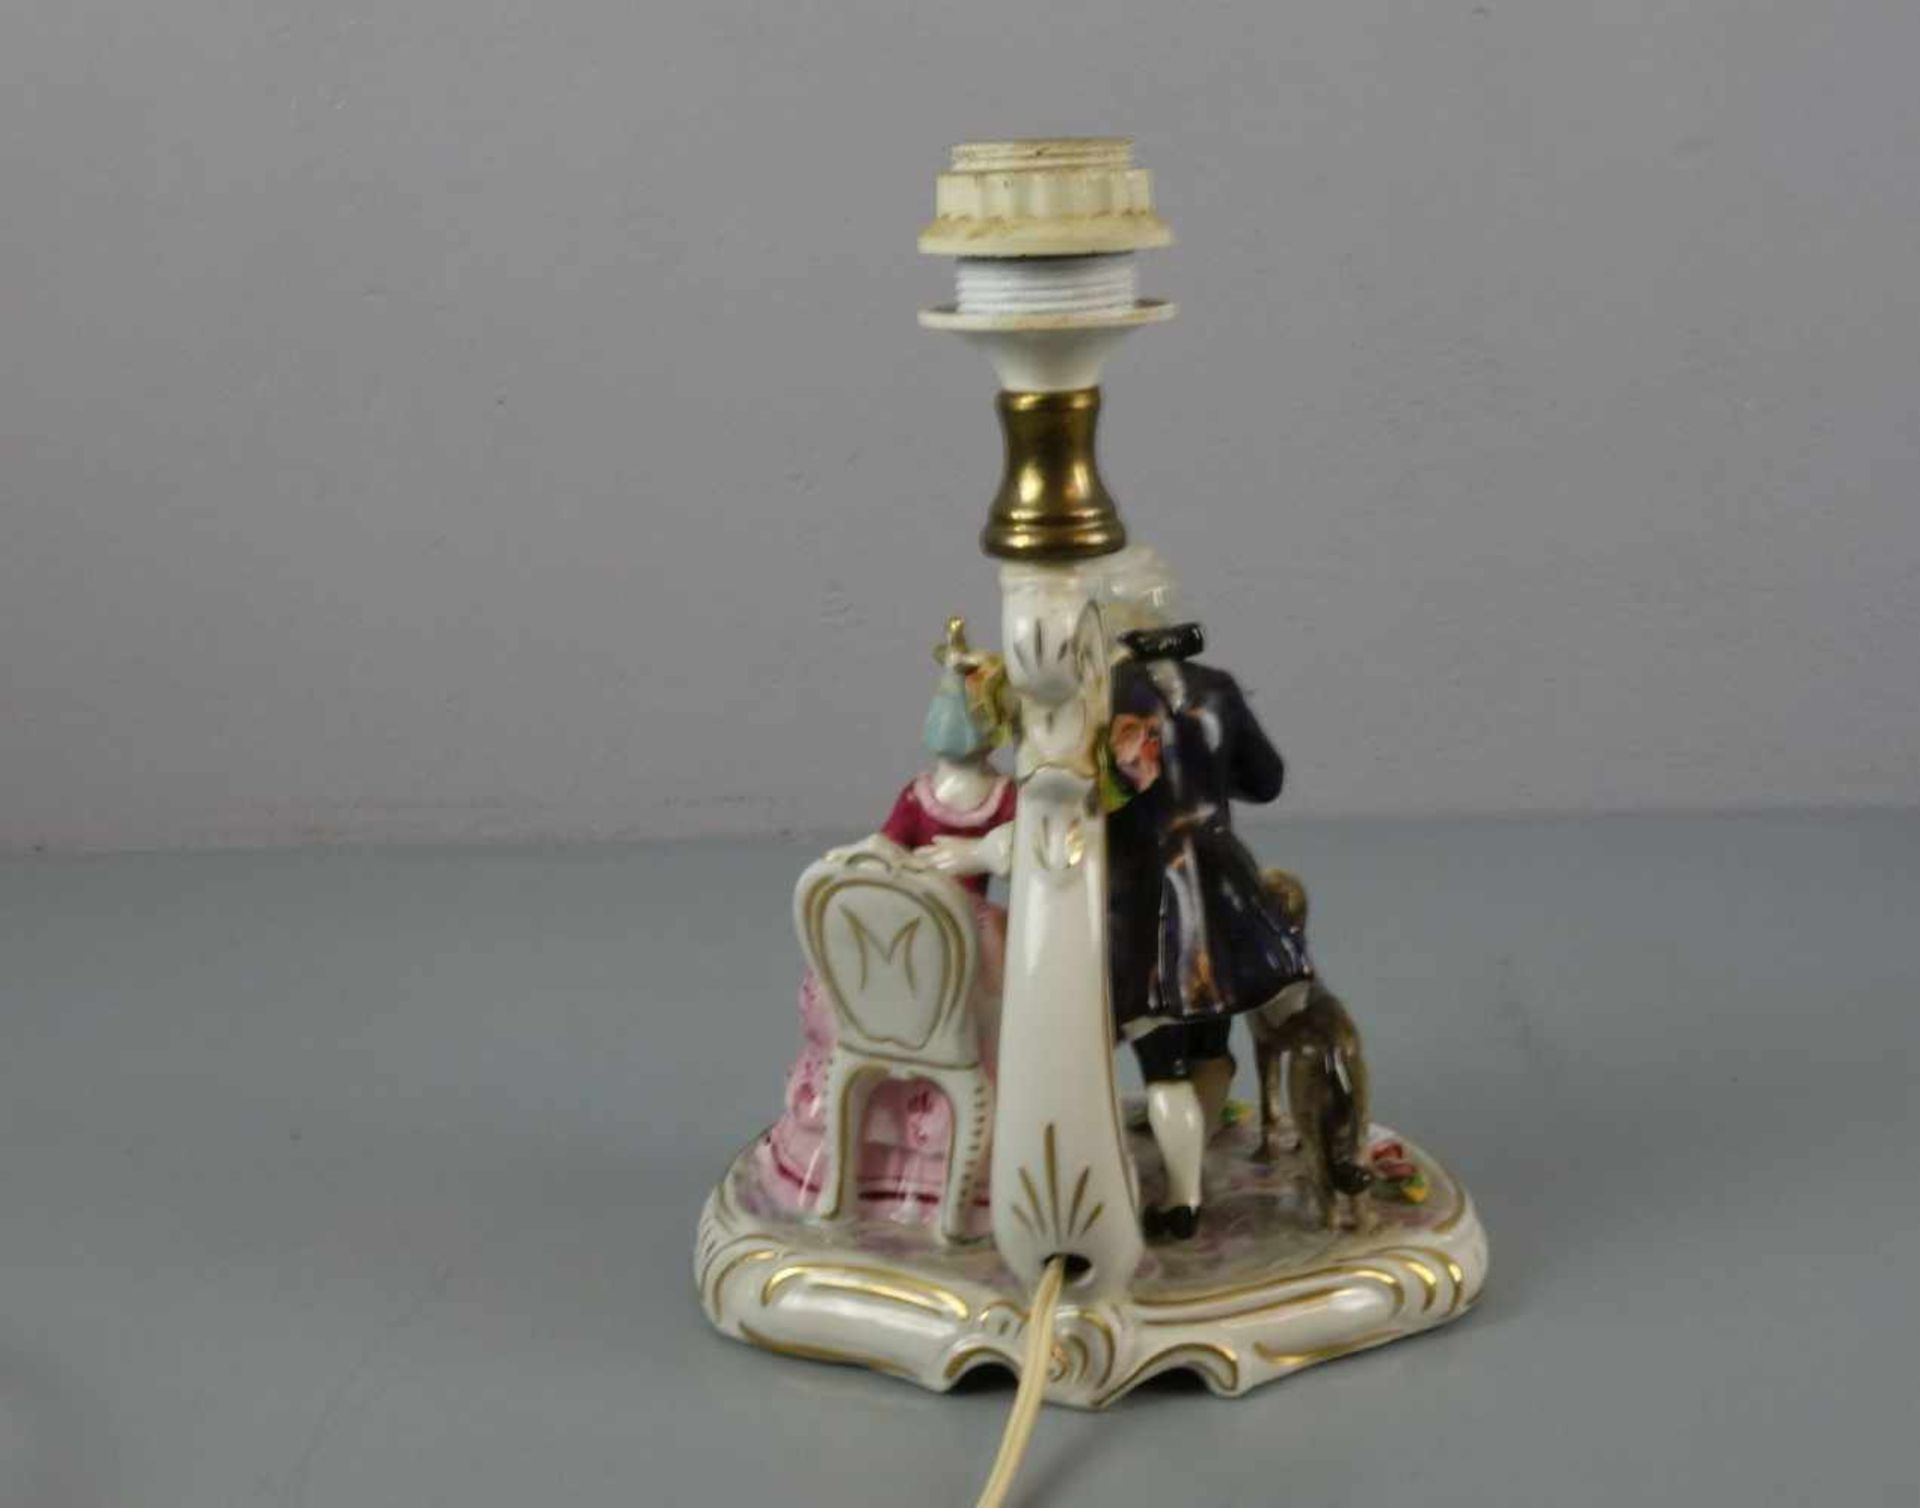 LAMPE / TISCHLAMPE, Porzellan, polychrom staffiert mit Watteau-Szenerie nach dem Vorbild des Rokoko; - Image 3 of 5